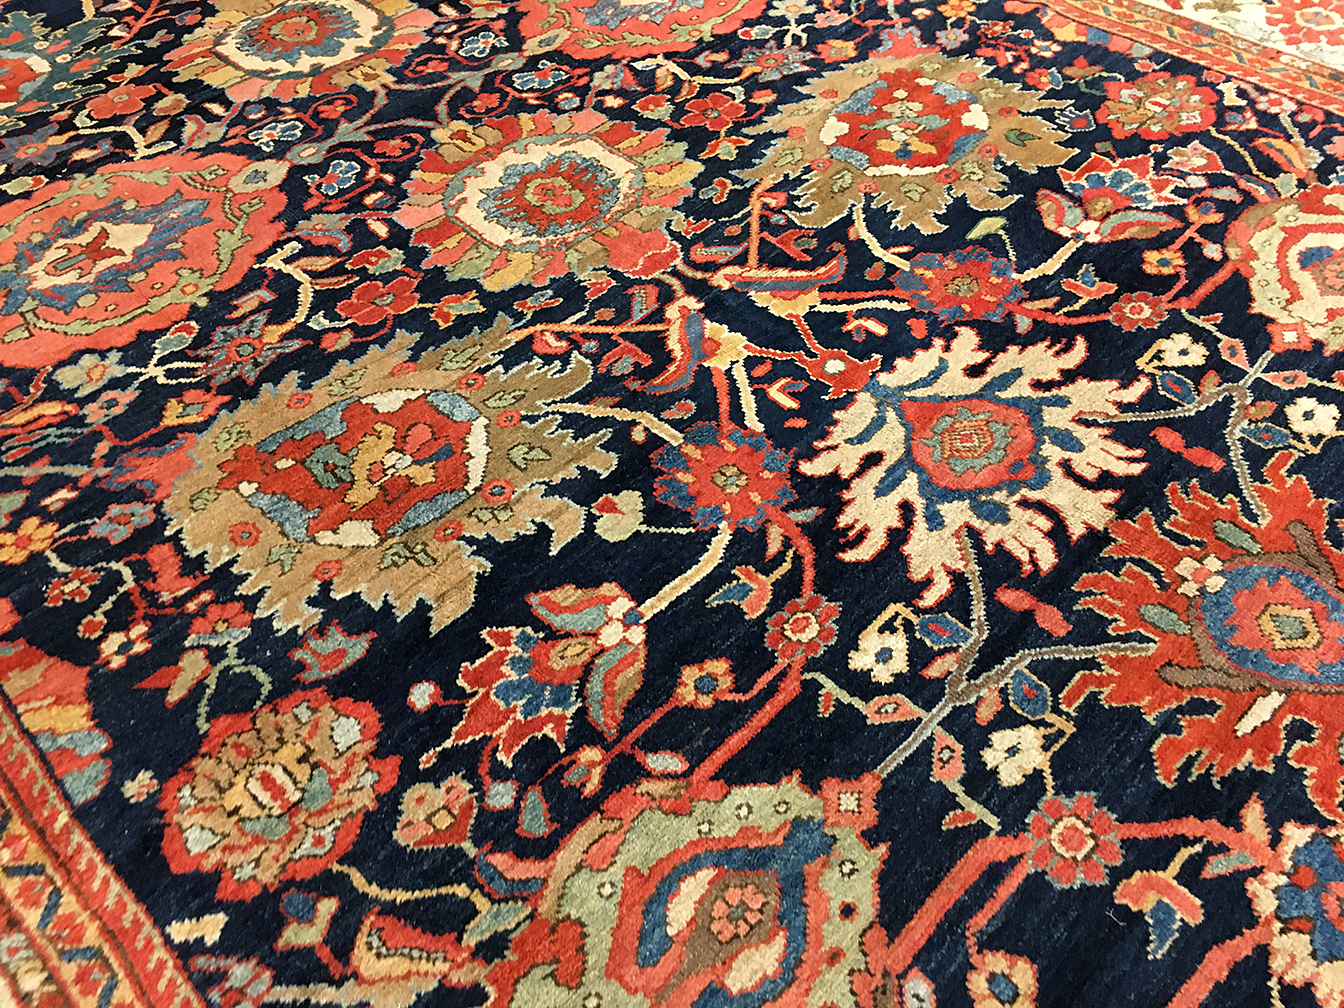 Antique mahal Carpet - # 80005